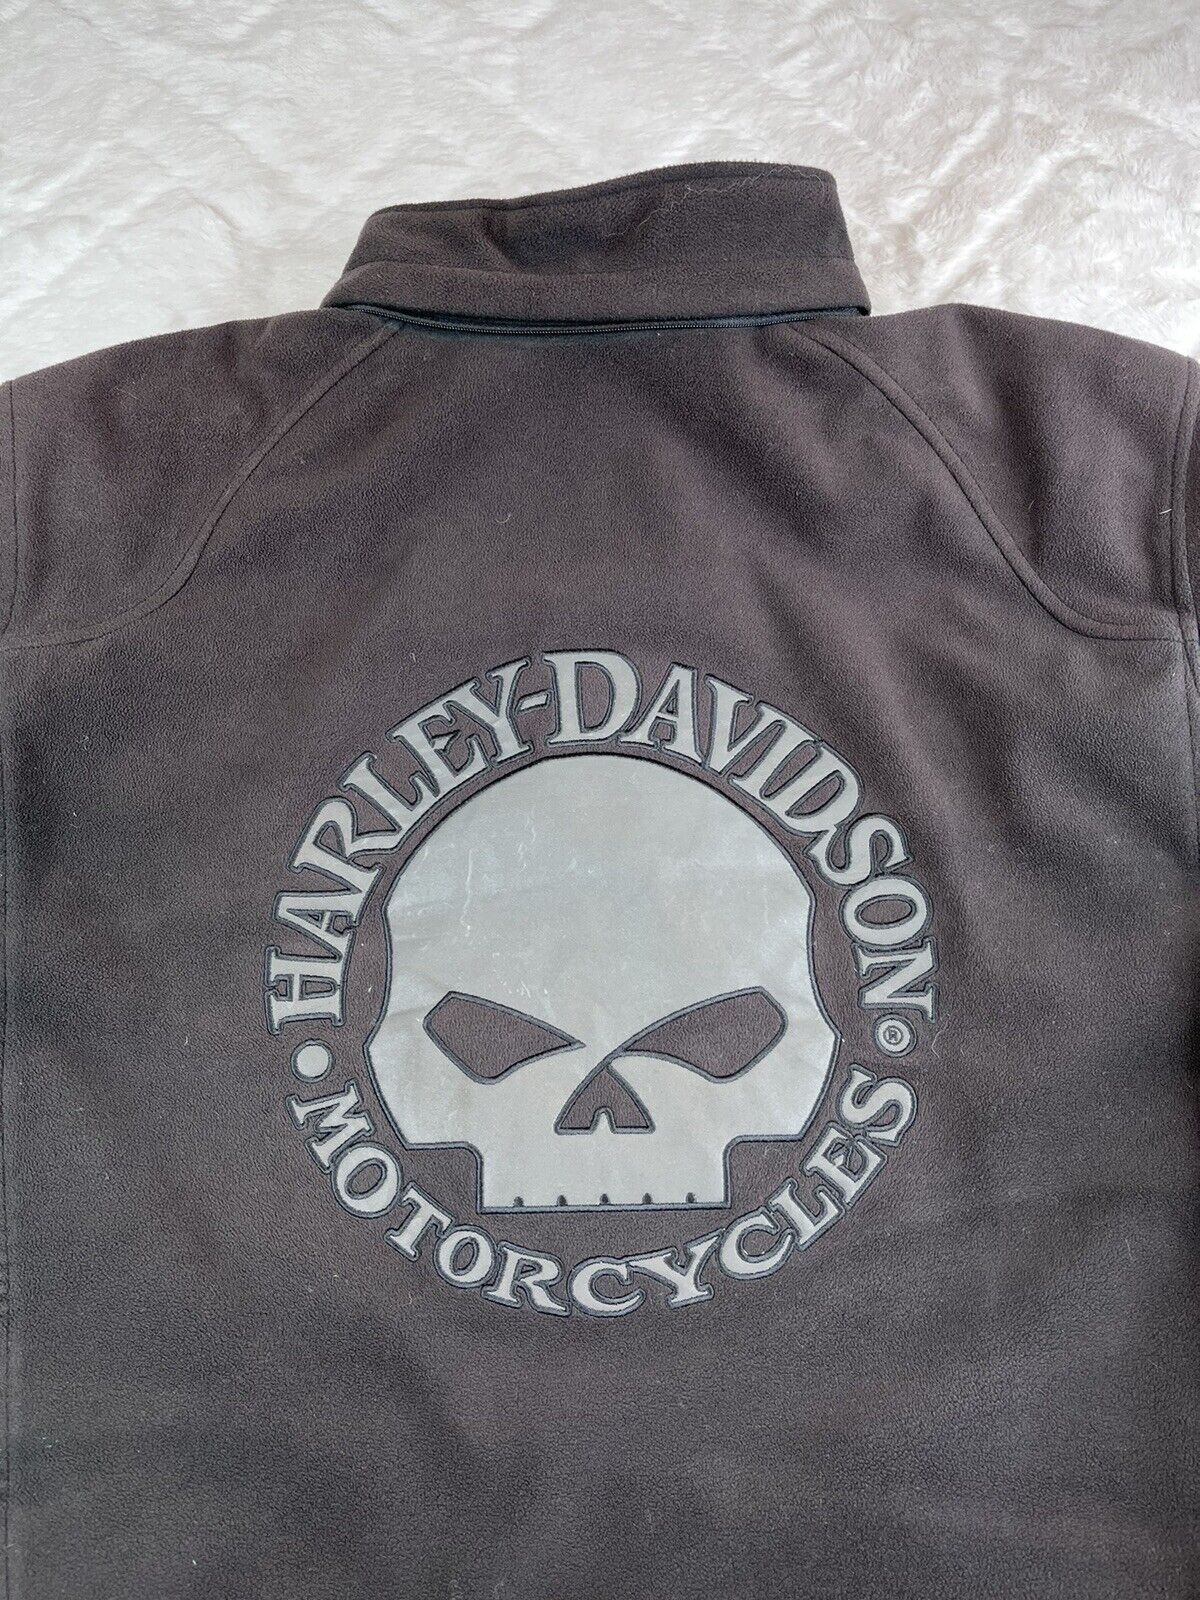 Harley Davidson Riding Gear Men's (L) Black Thick Fleece Skull Jacket - No Hood